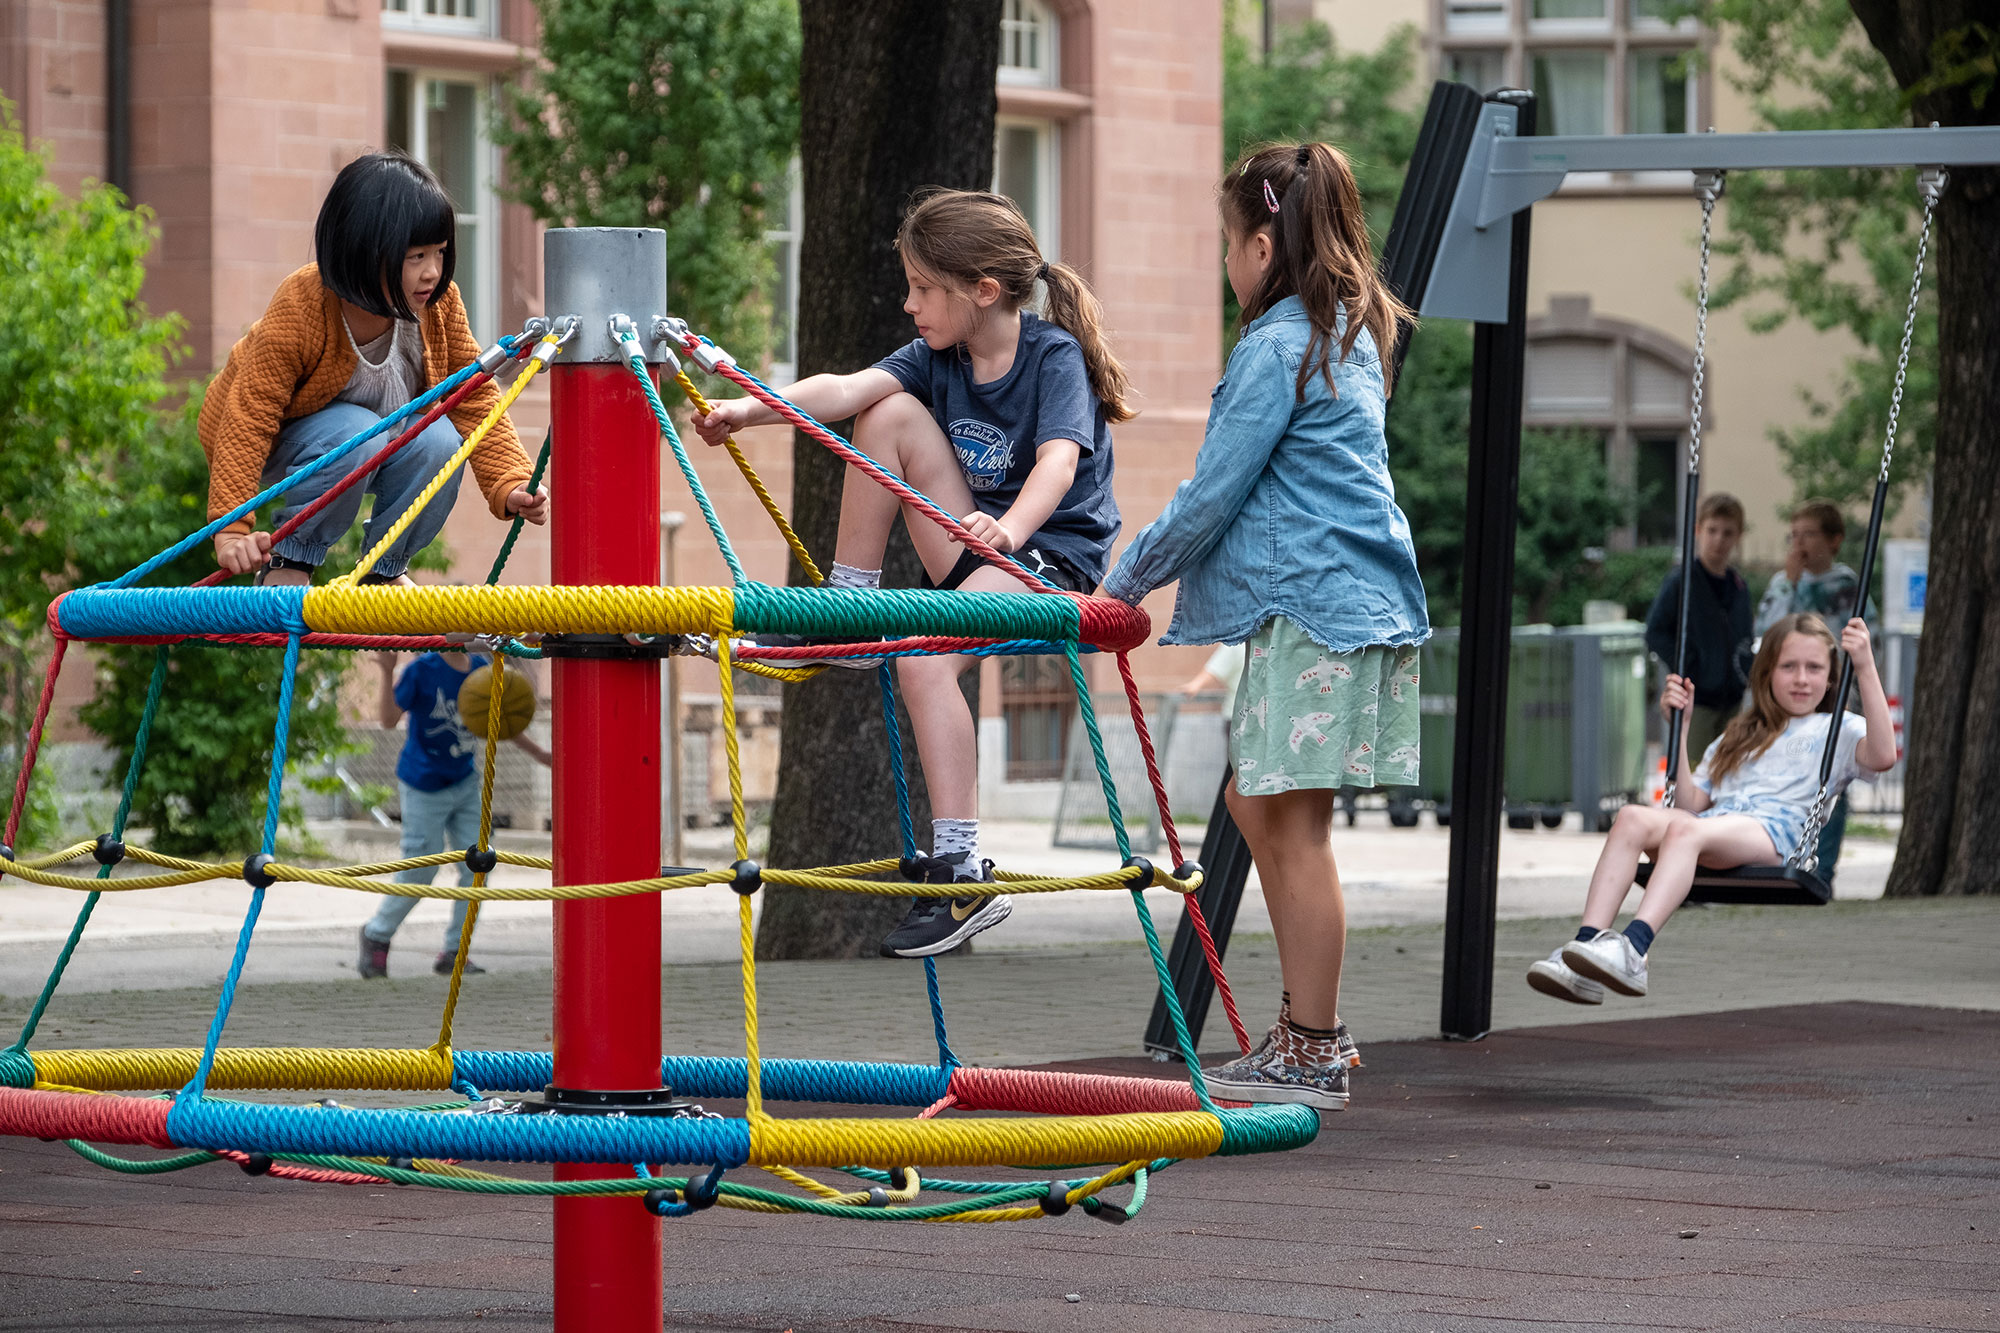 Drei Mädchen spielen auf dem Spielplatz auf einem runden Karussell.	